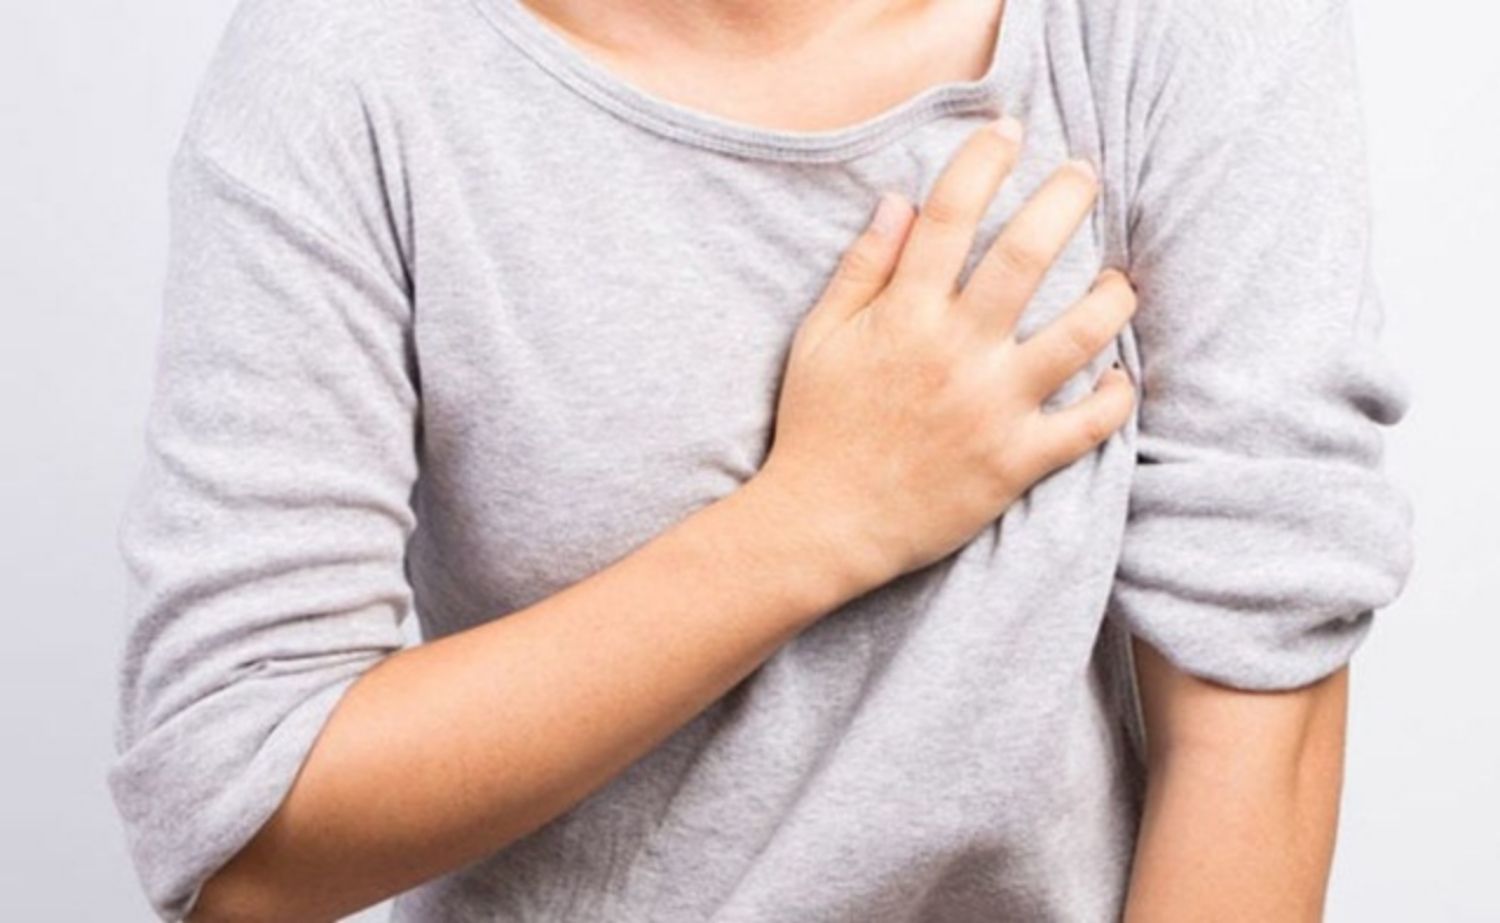 Có phương pháp nào giảm đau ngực gần ngày kinh hiệu quả không?
